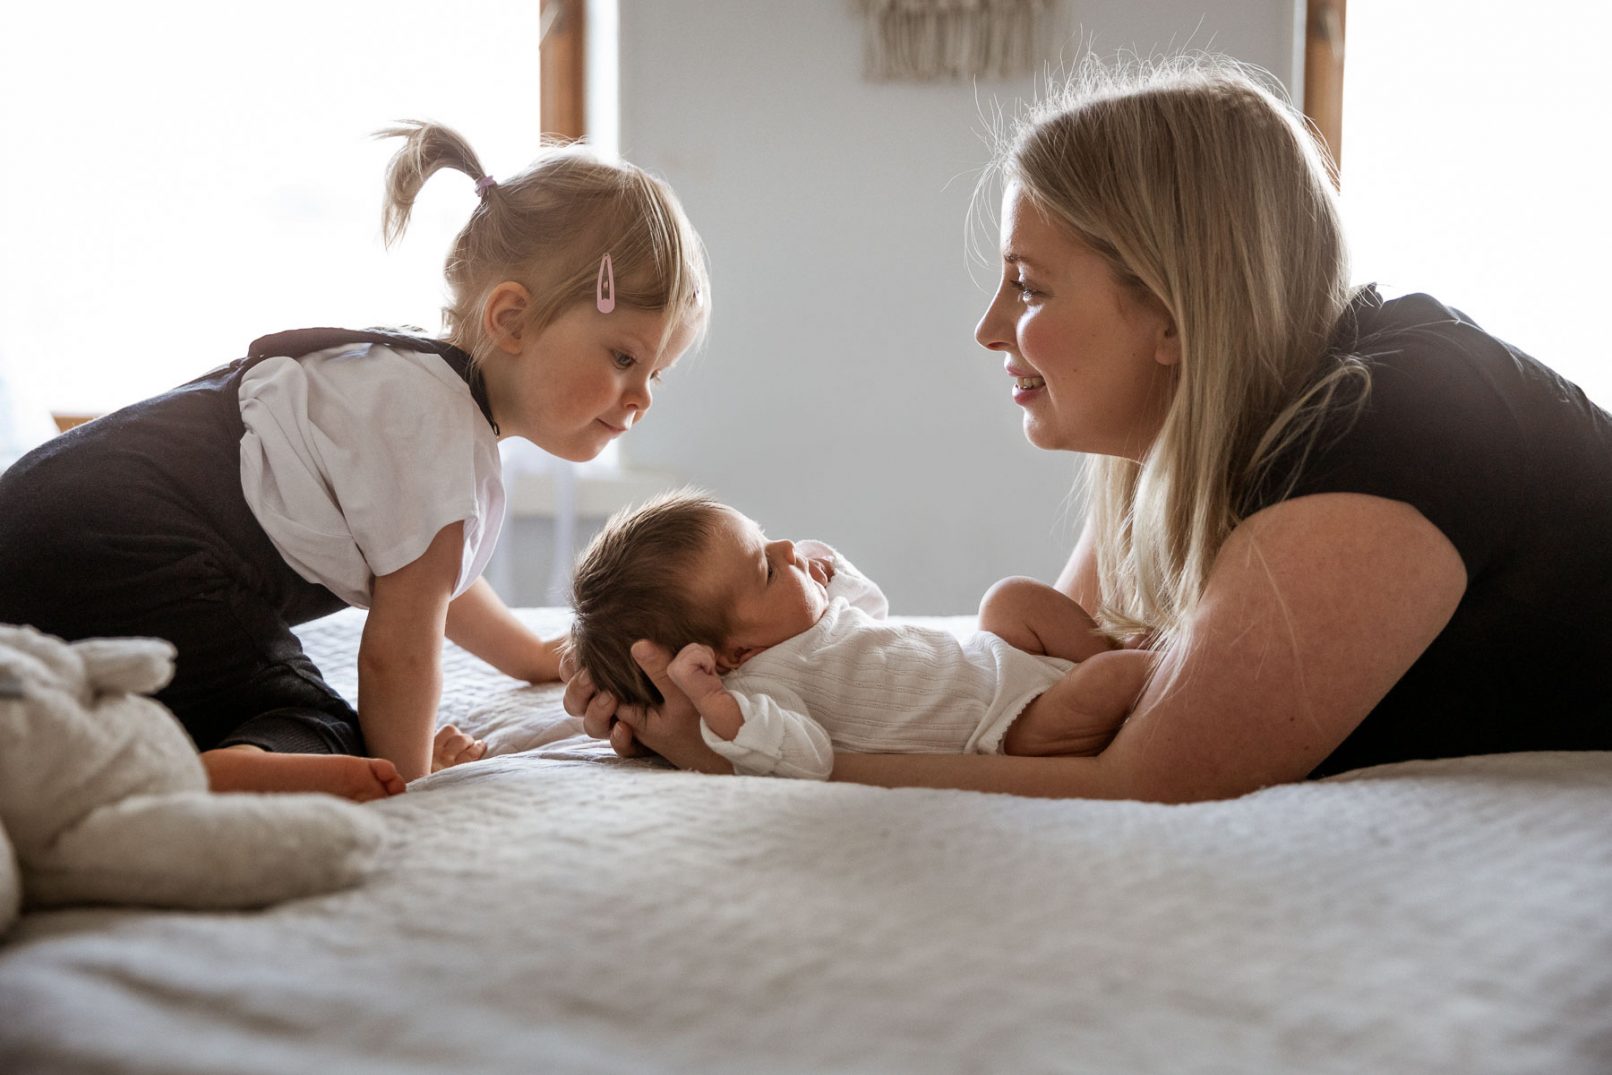 Vauvakuvaus kotona, isosiskon ihmettelyä, Siru Danielsson Photography